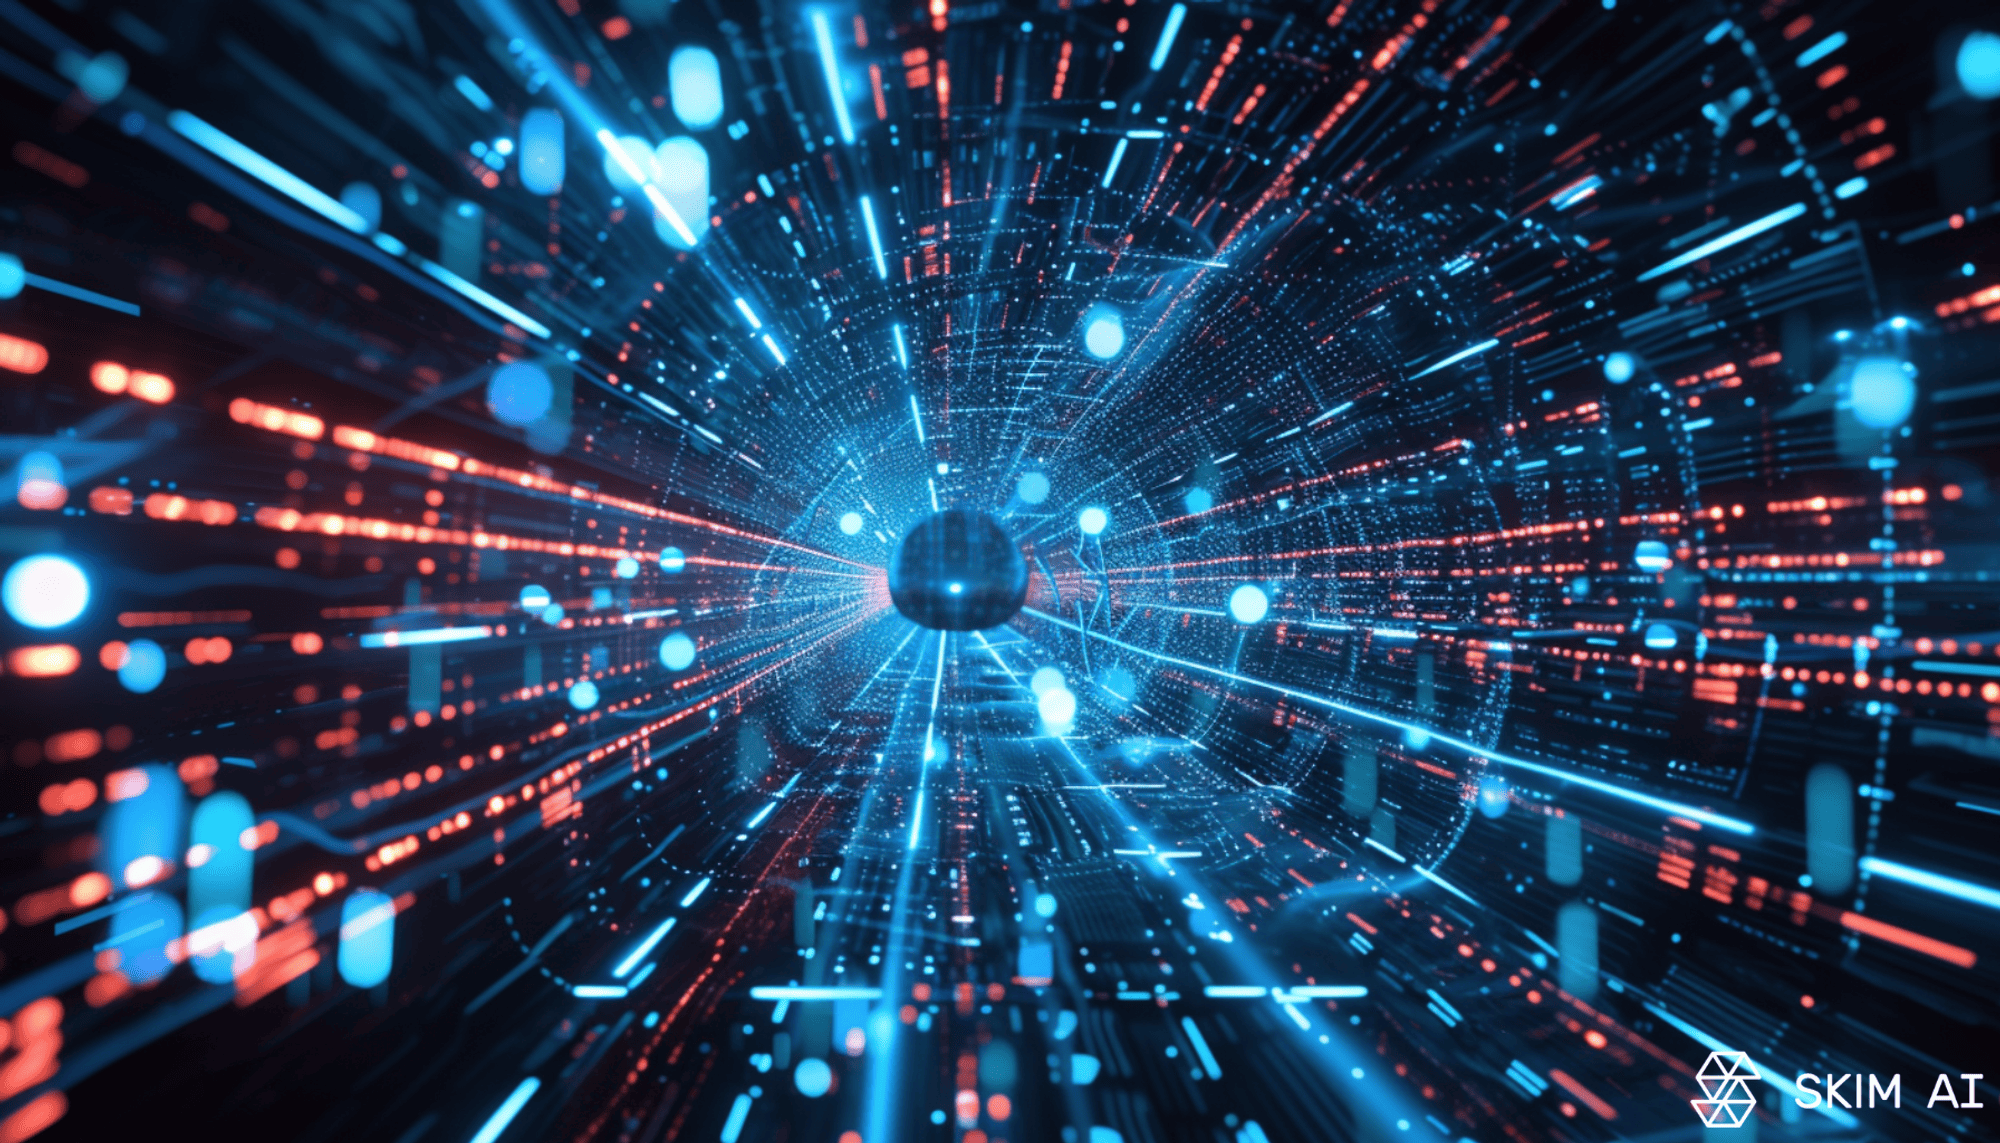 túnel digital com uma esfera central rodeada de rastos de luz